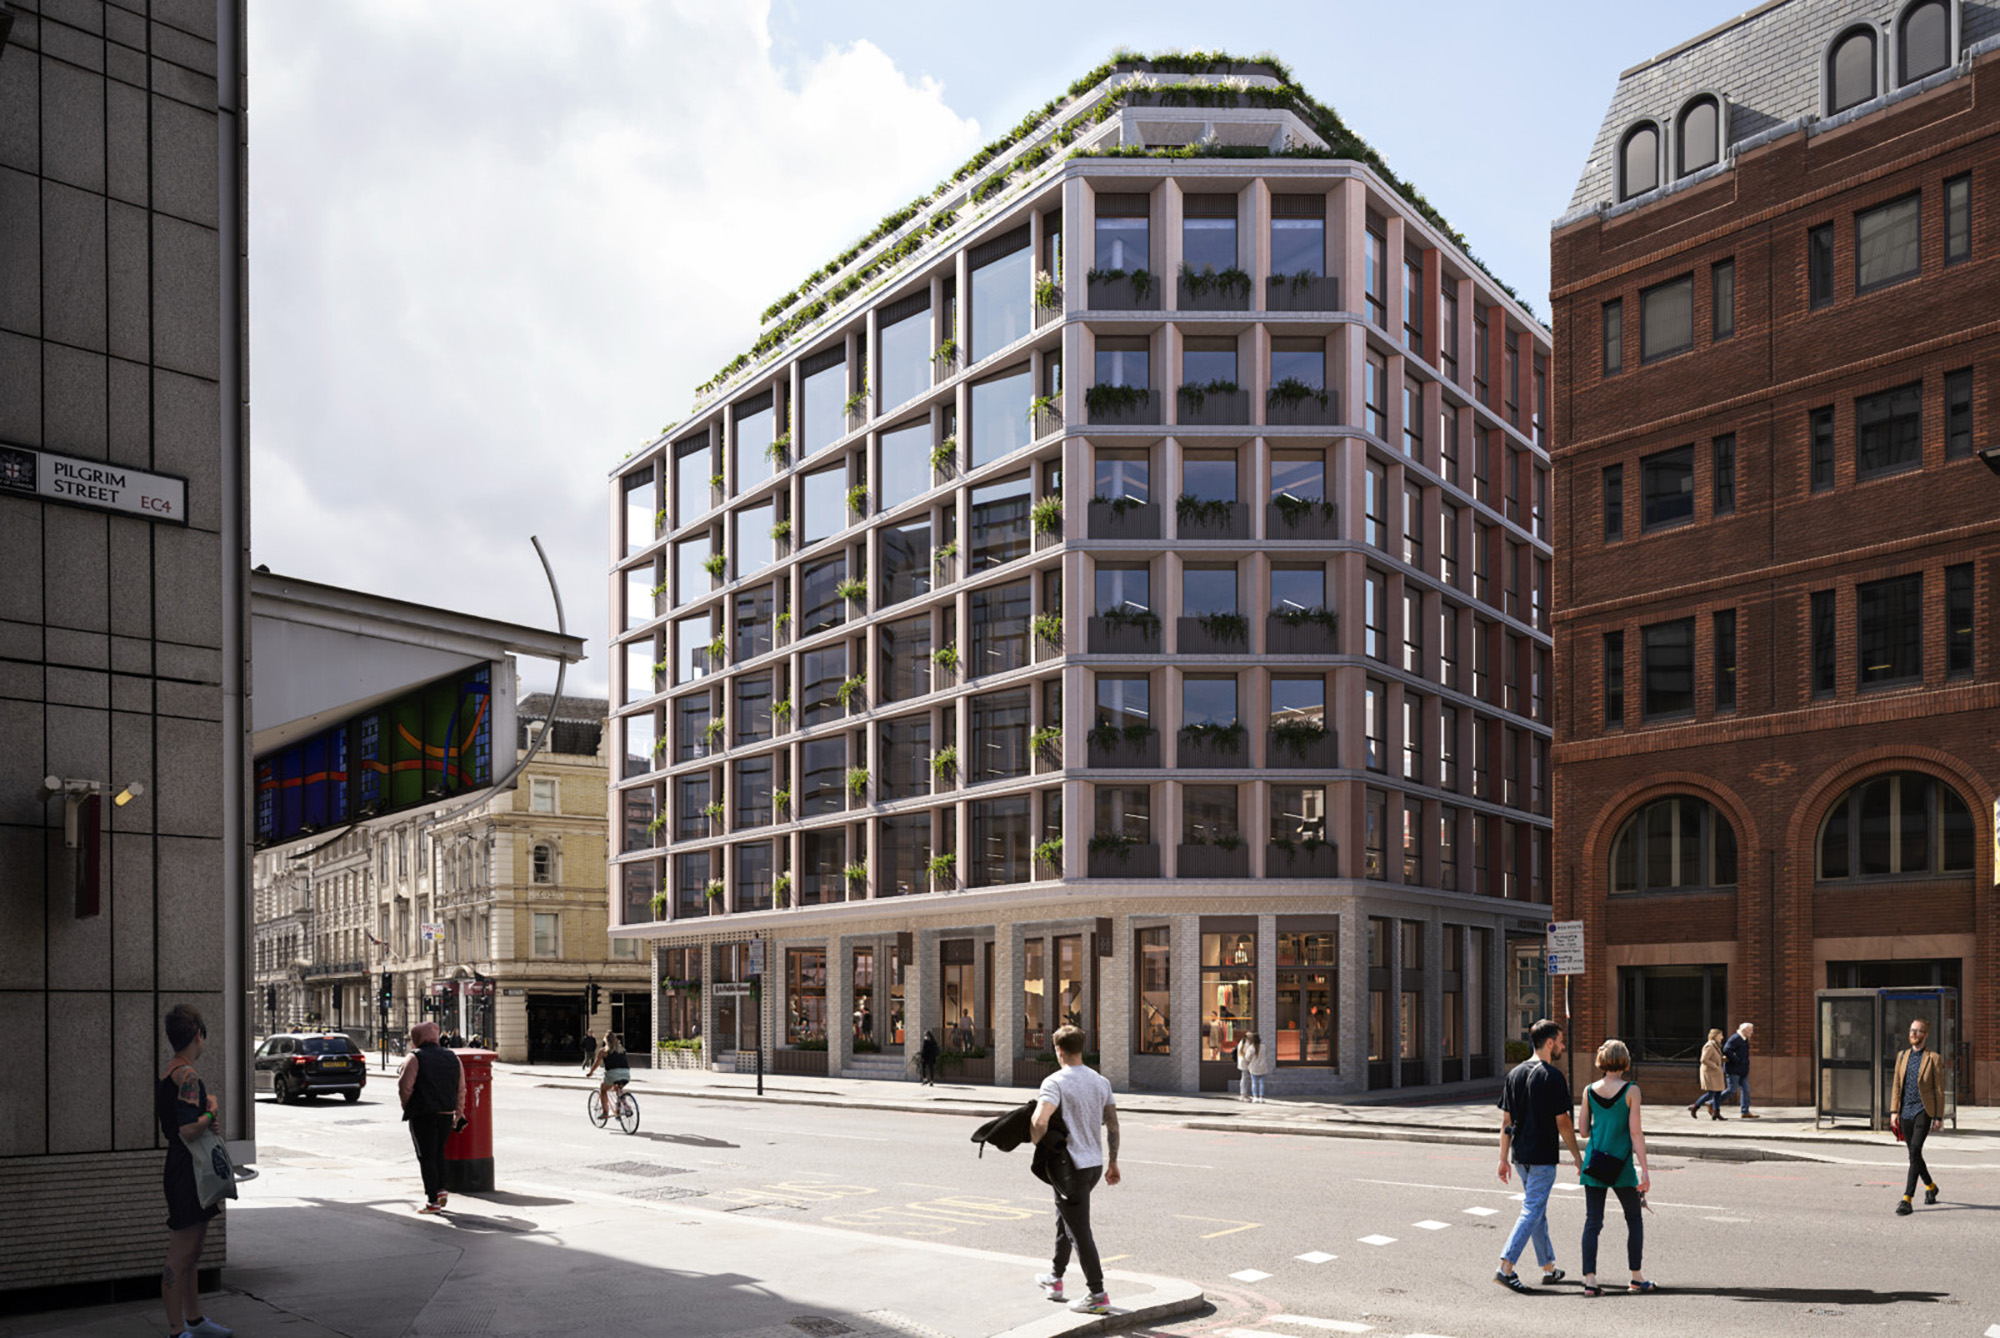 10 Fleet Street rendering